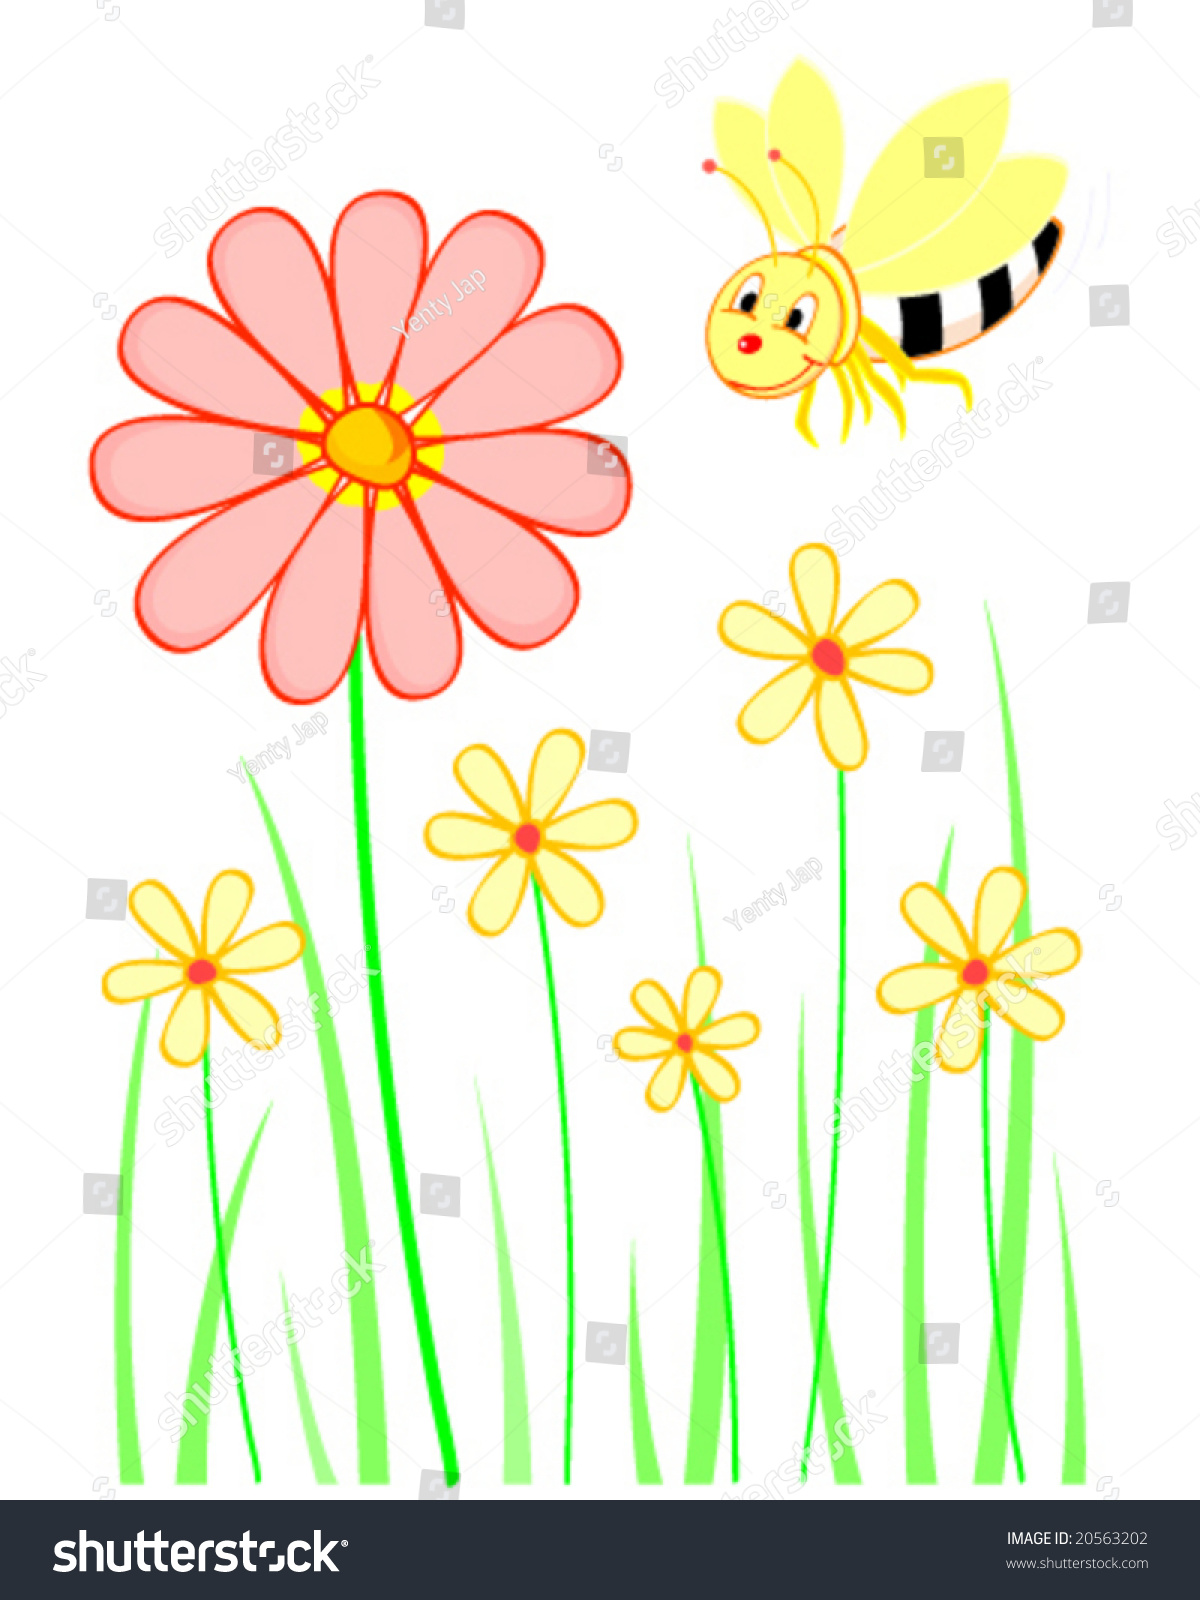 Bee With Flower Stock Vector 20563202 : Shutterstock